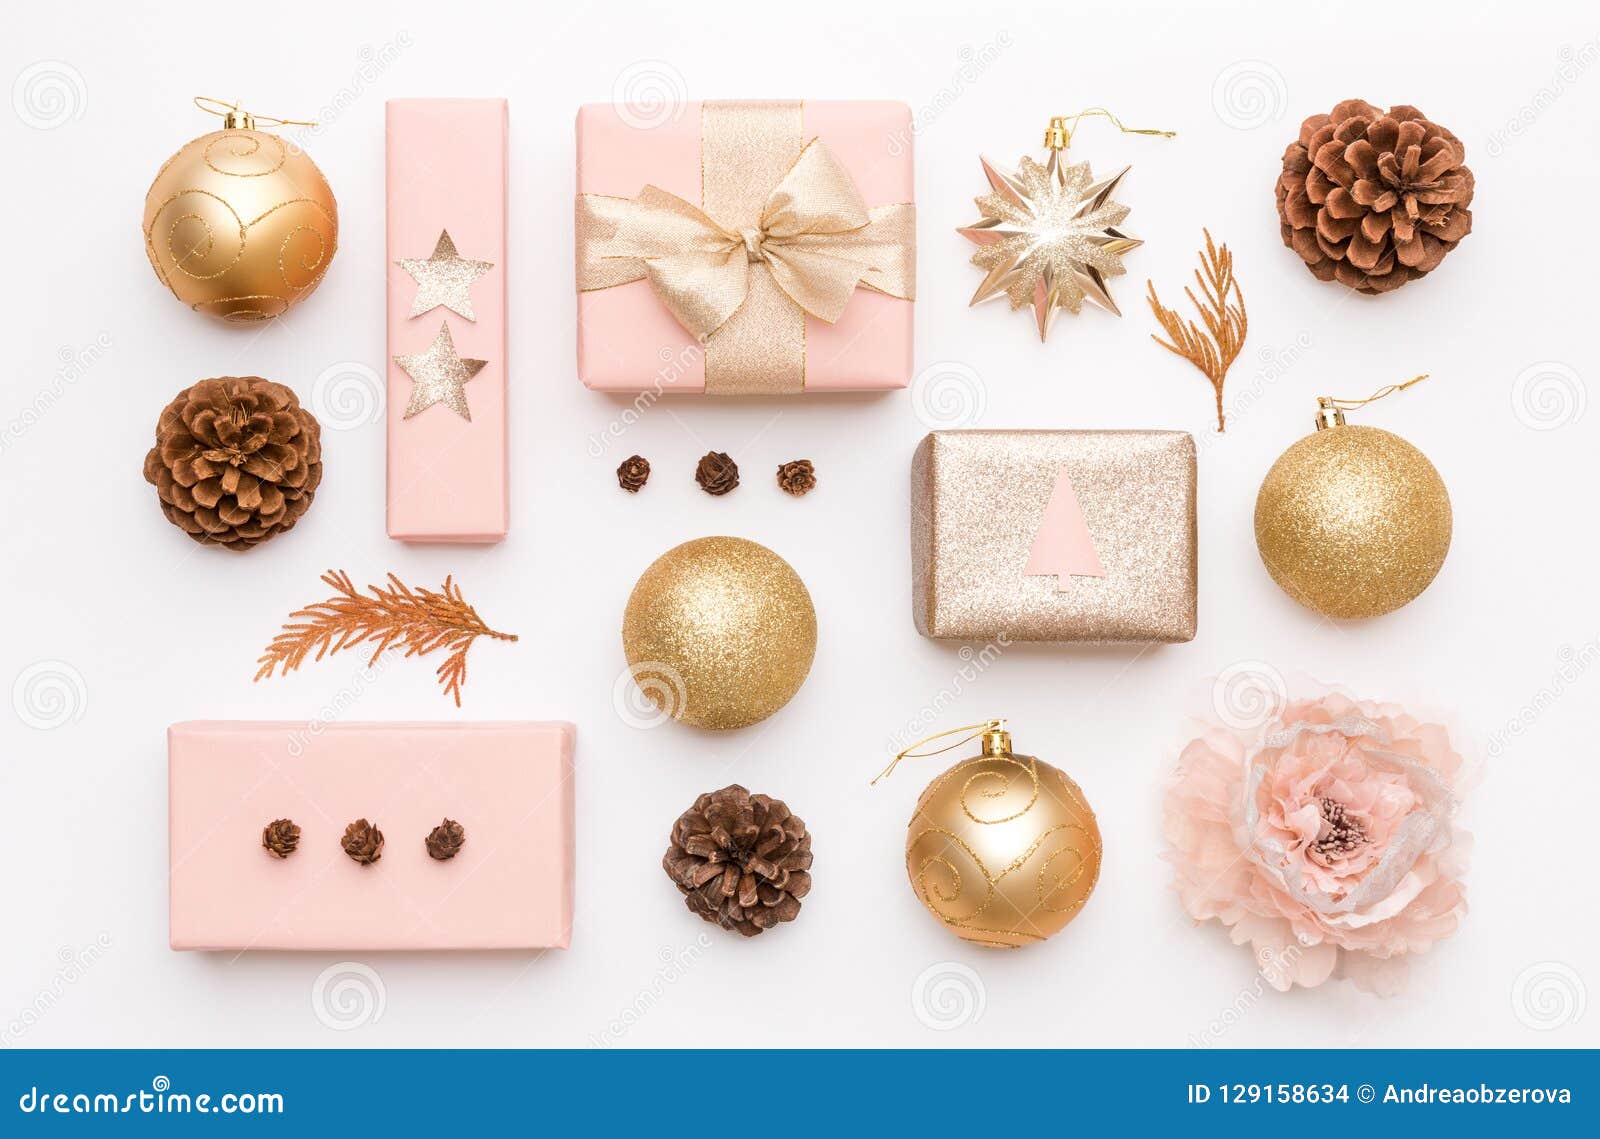 桃红色和金子在白色背景隔绝的圣诞节礼物被包裹的xmas箱子 圣诞节装饰品 中看不中用的物品和杉木锥体库存照片